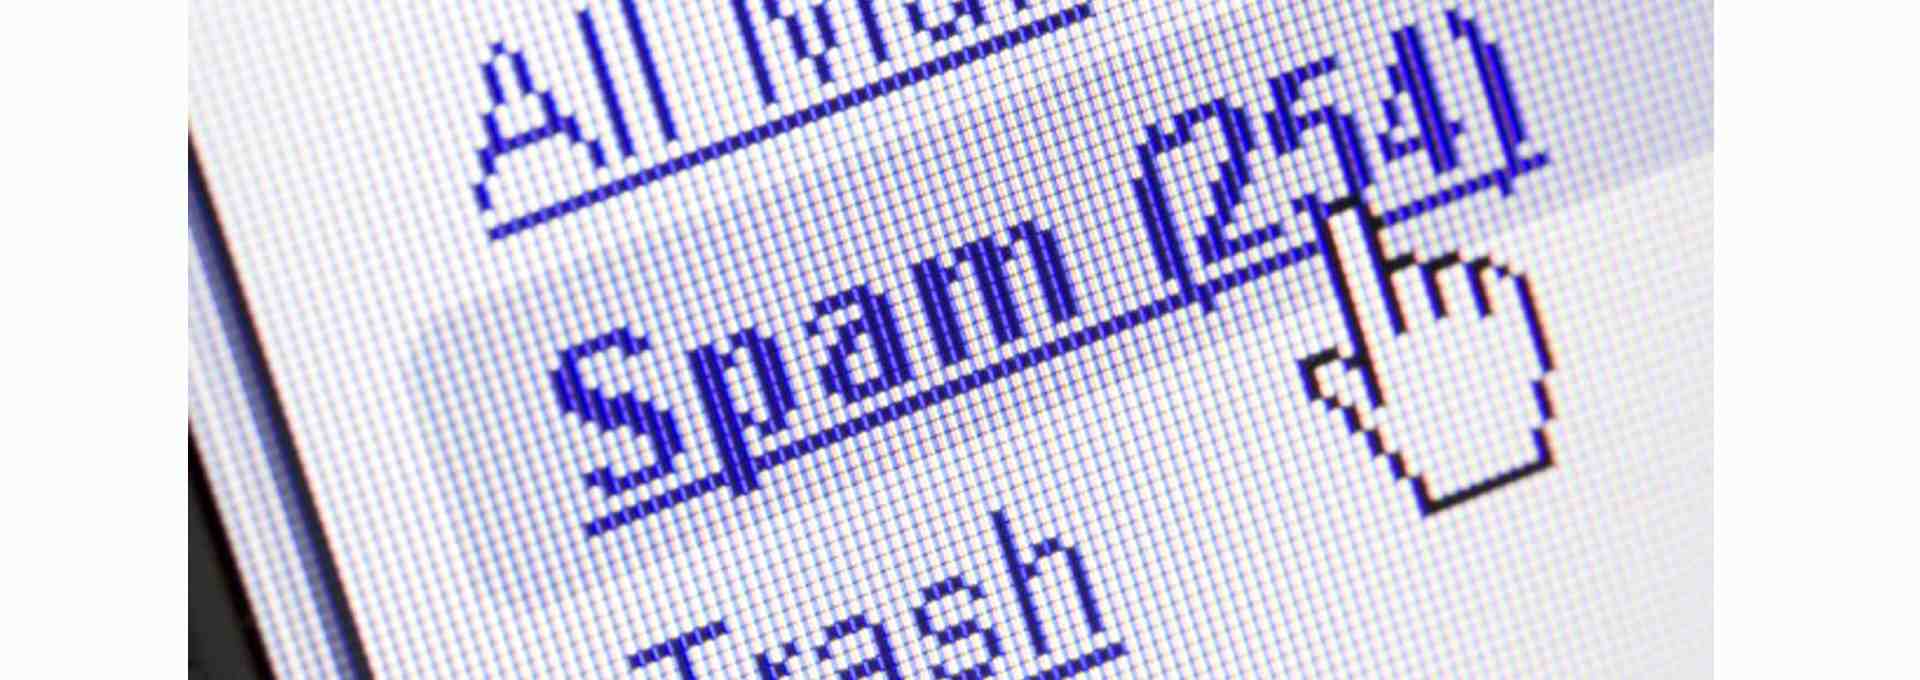 Le coût du spam